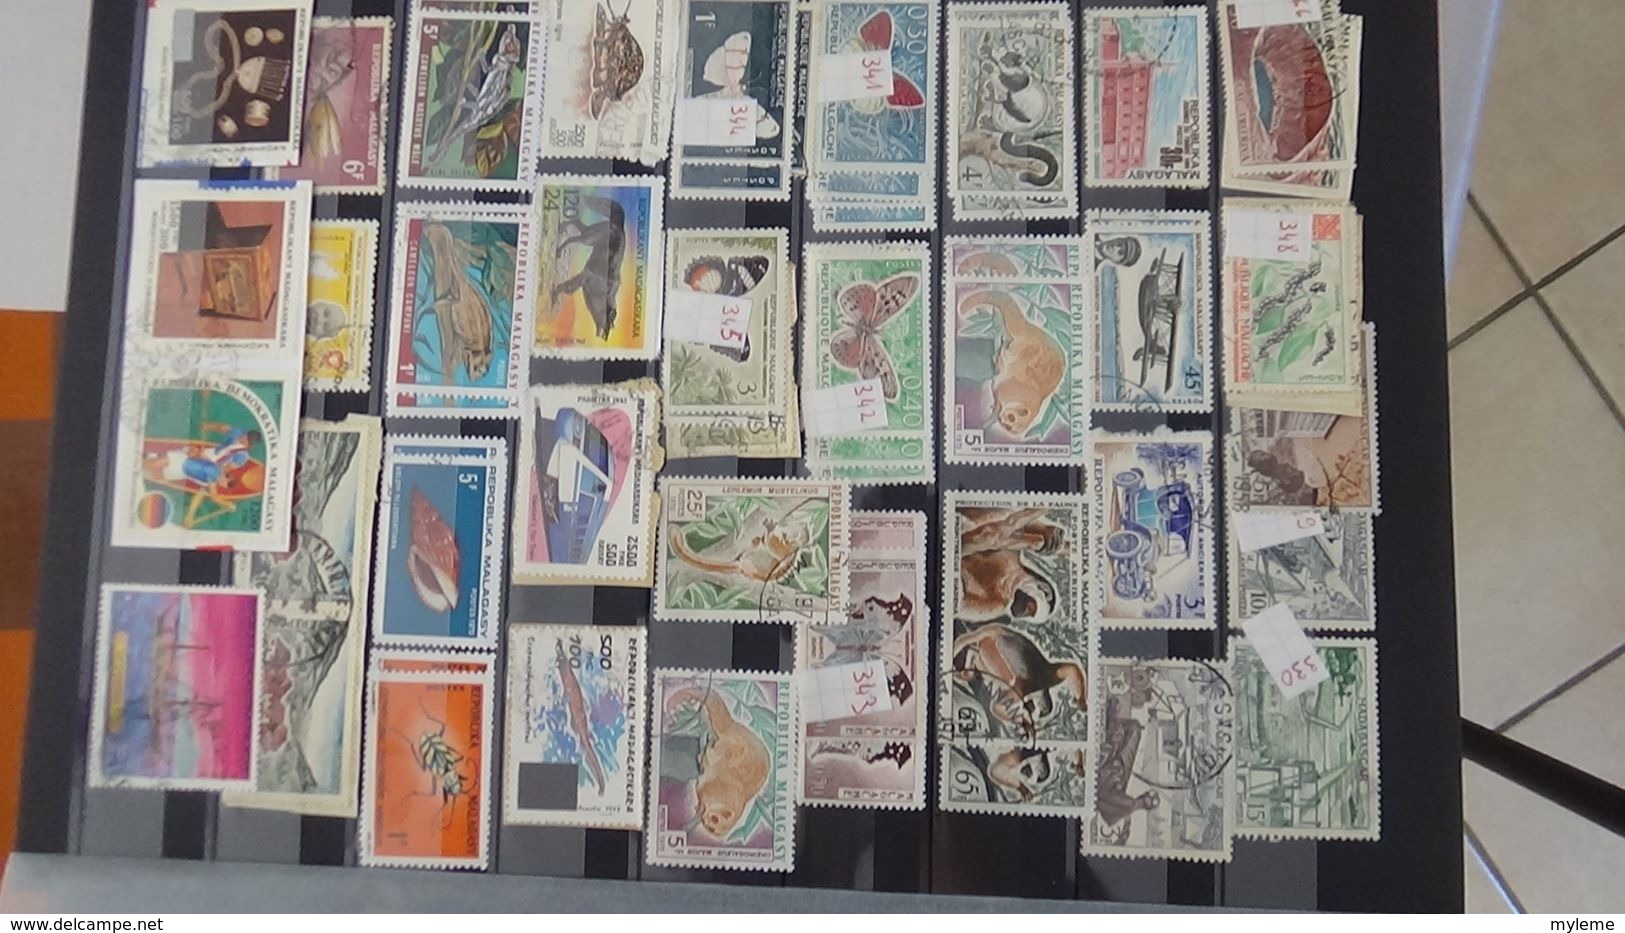 D91 Collection de timbres oblitérés de différents pays d'Afrique.  A saisir !!!